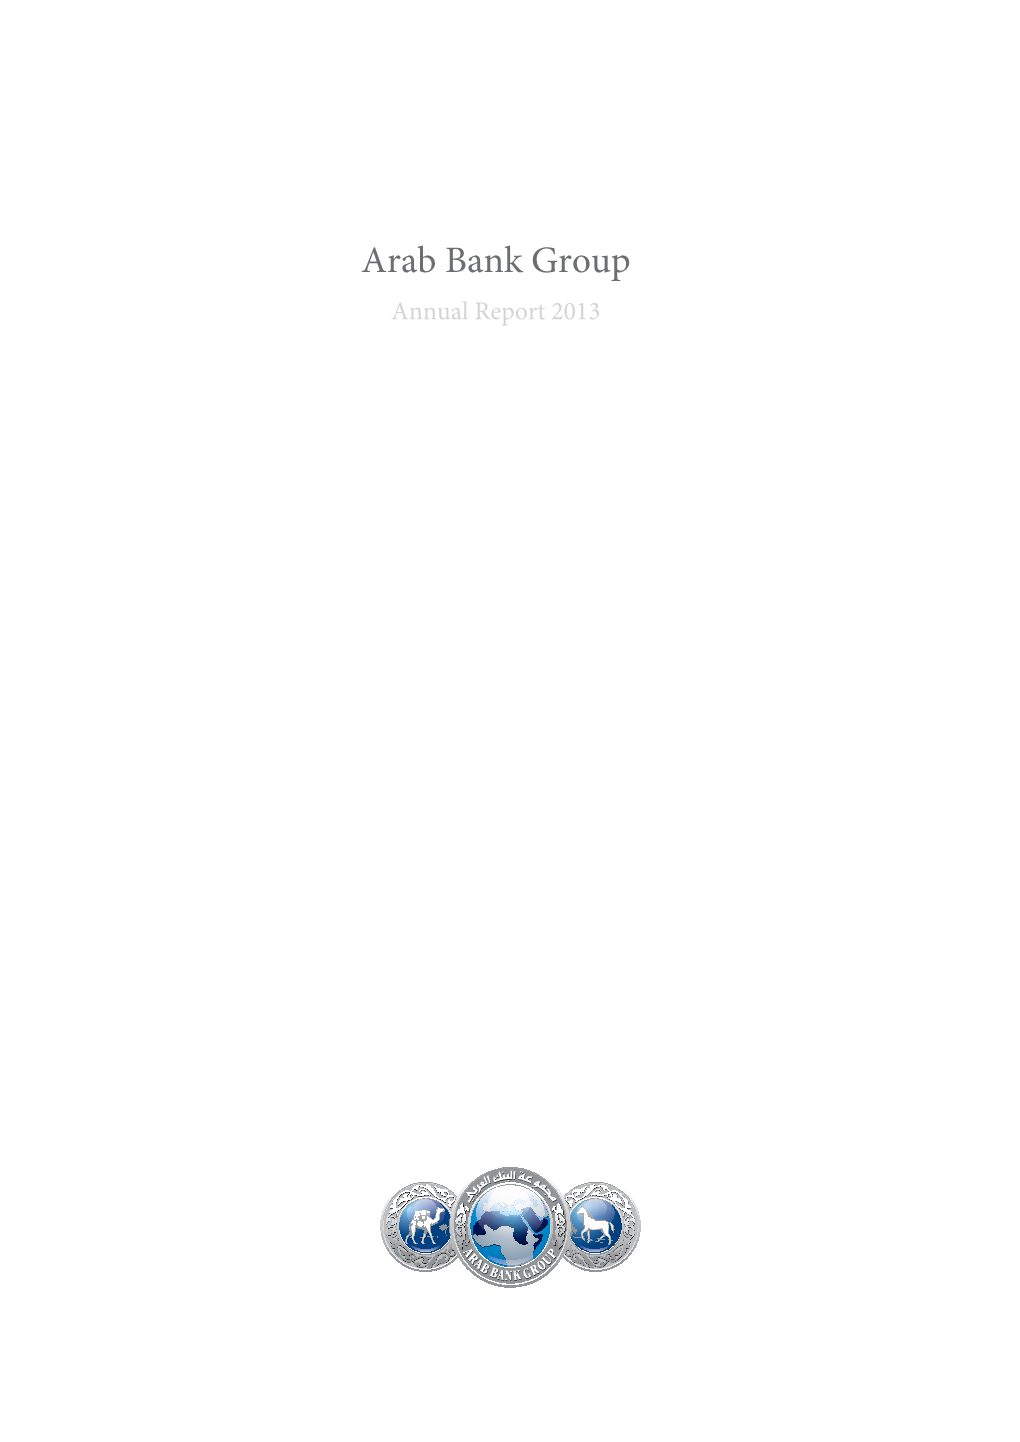 Arab Bank Group Annual Report 2013 T AB L E O F CON T EN